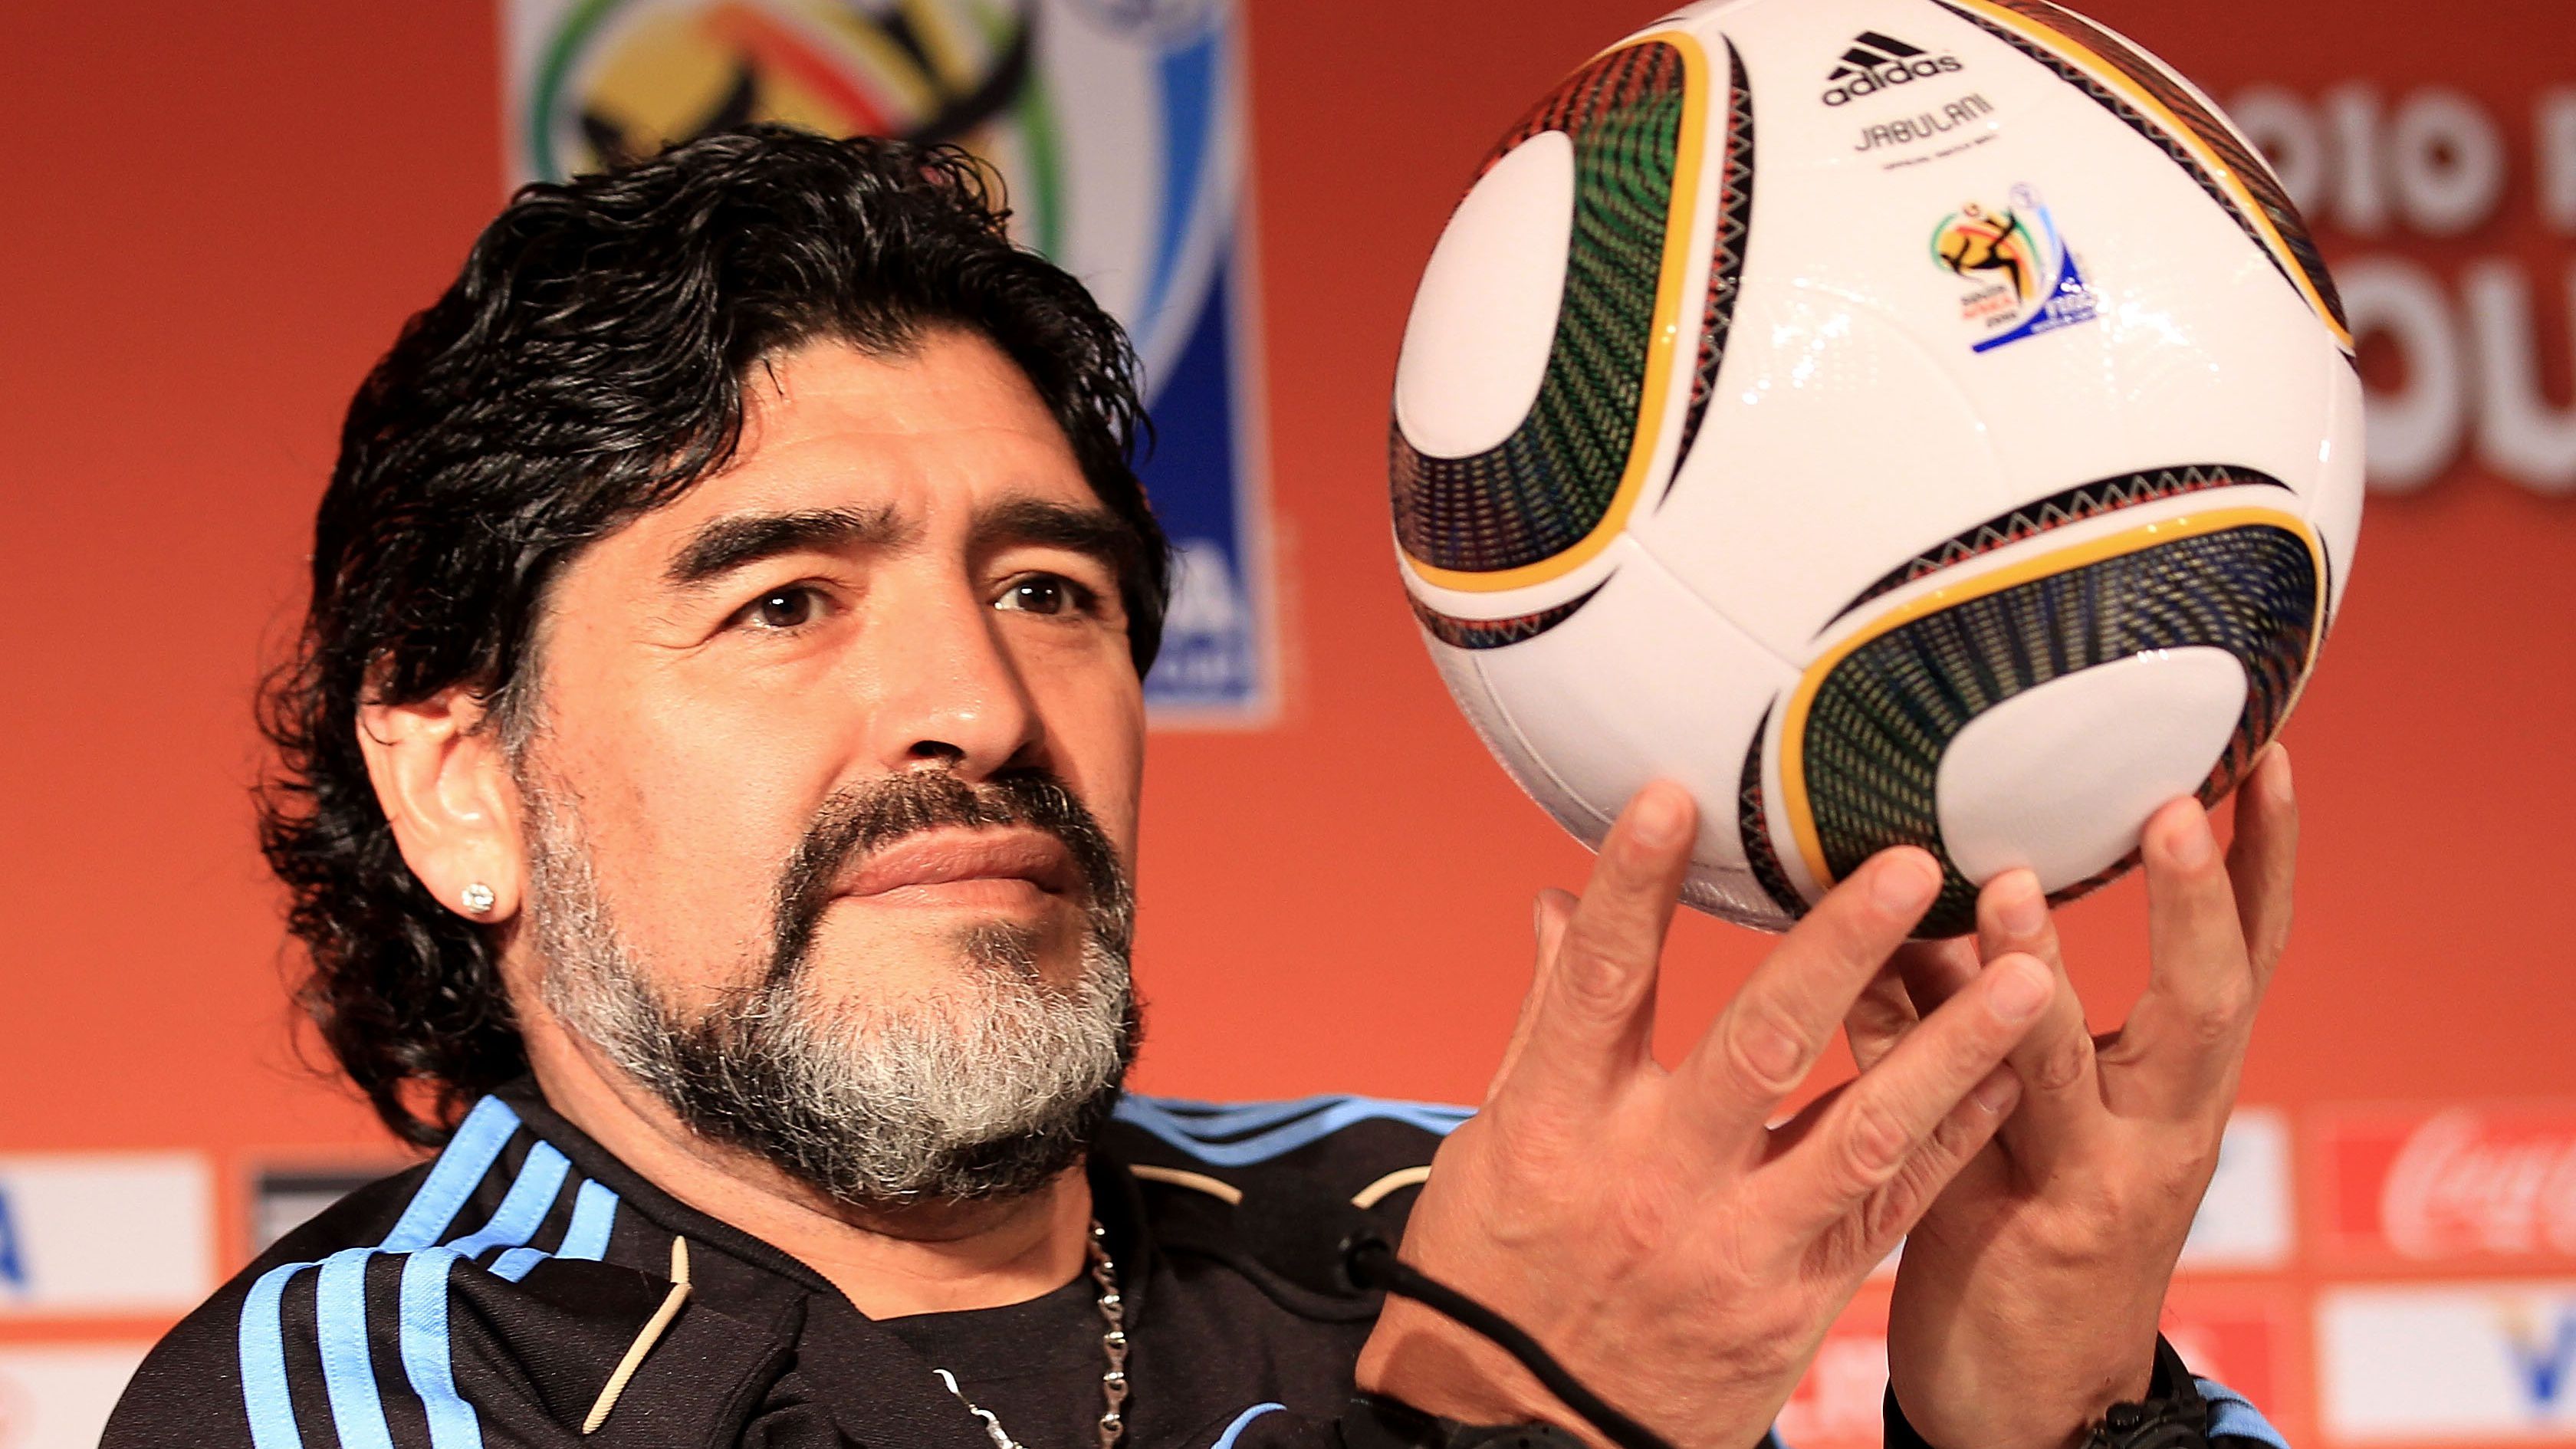 Jövőre kezdődhet a per Maradona halálának ügyében